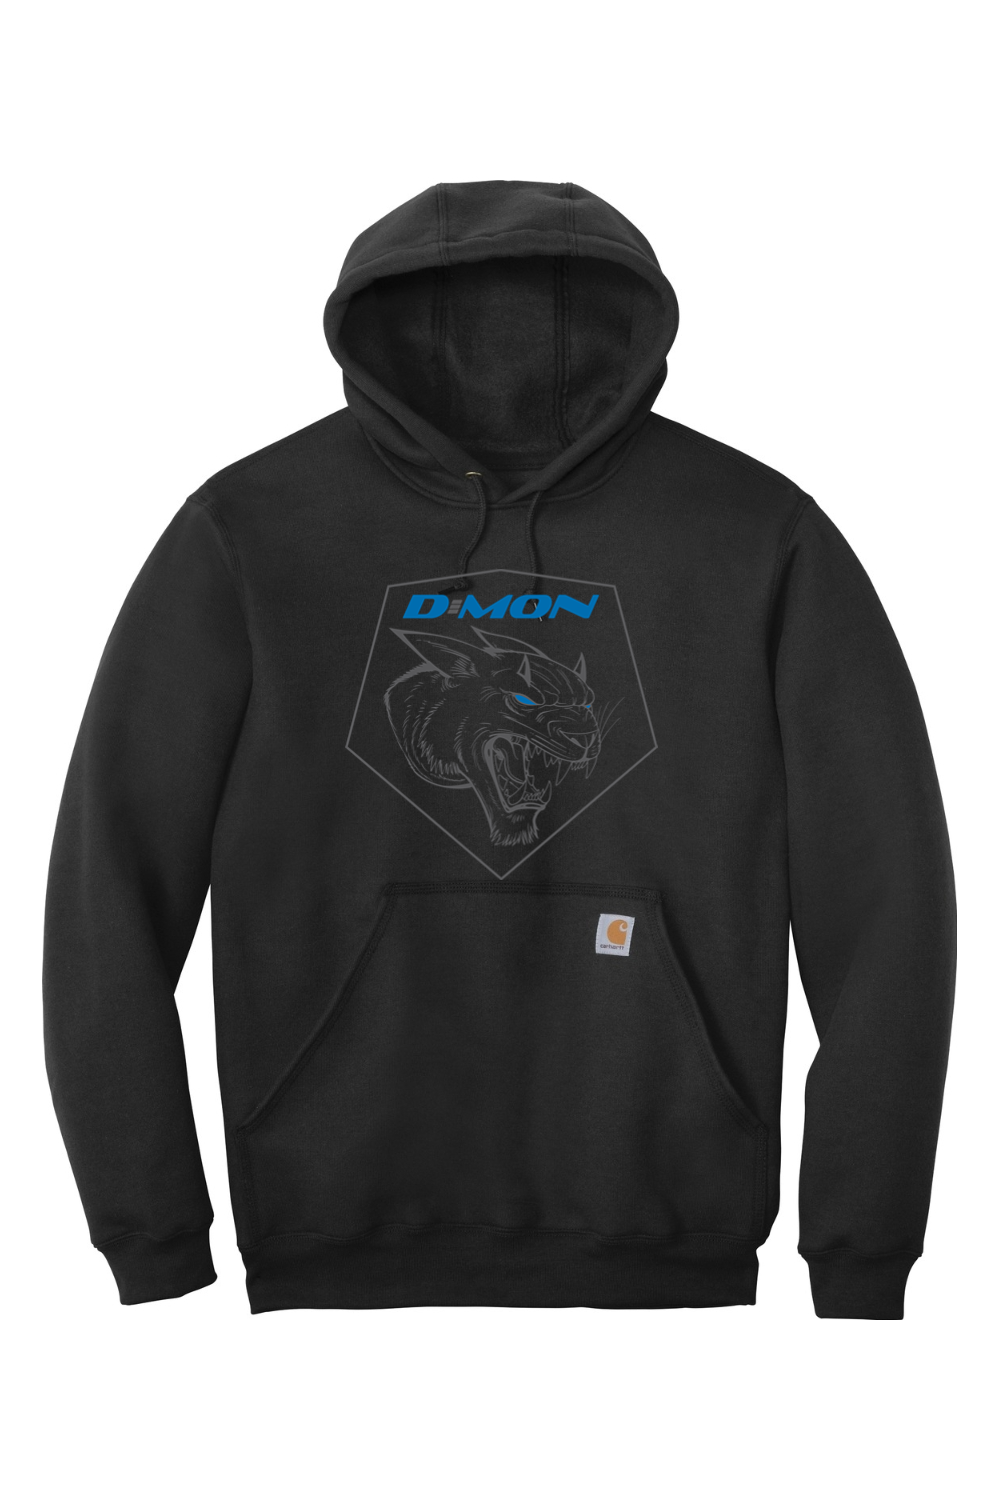 D-MON - Carhartt Midweight Lions Hooded Sweatshirt (runs large)